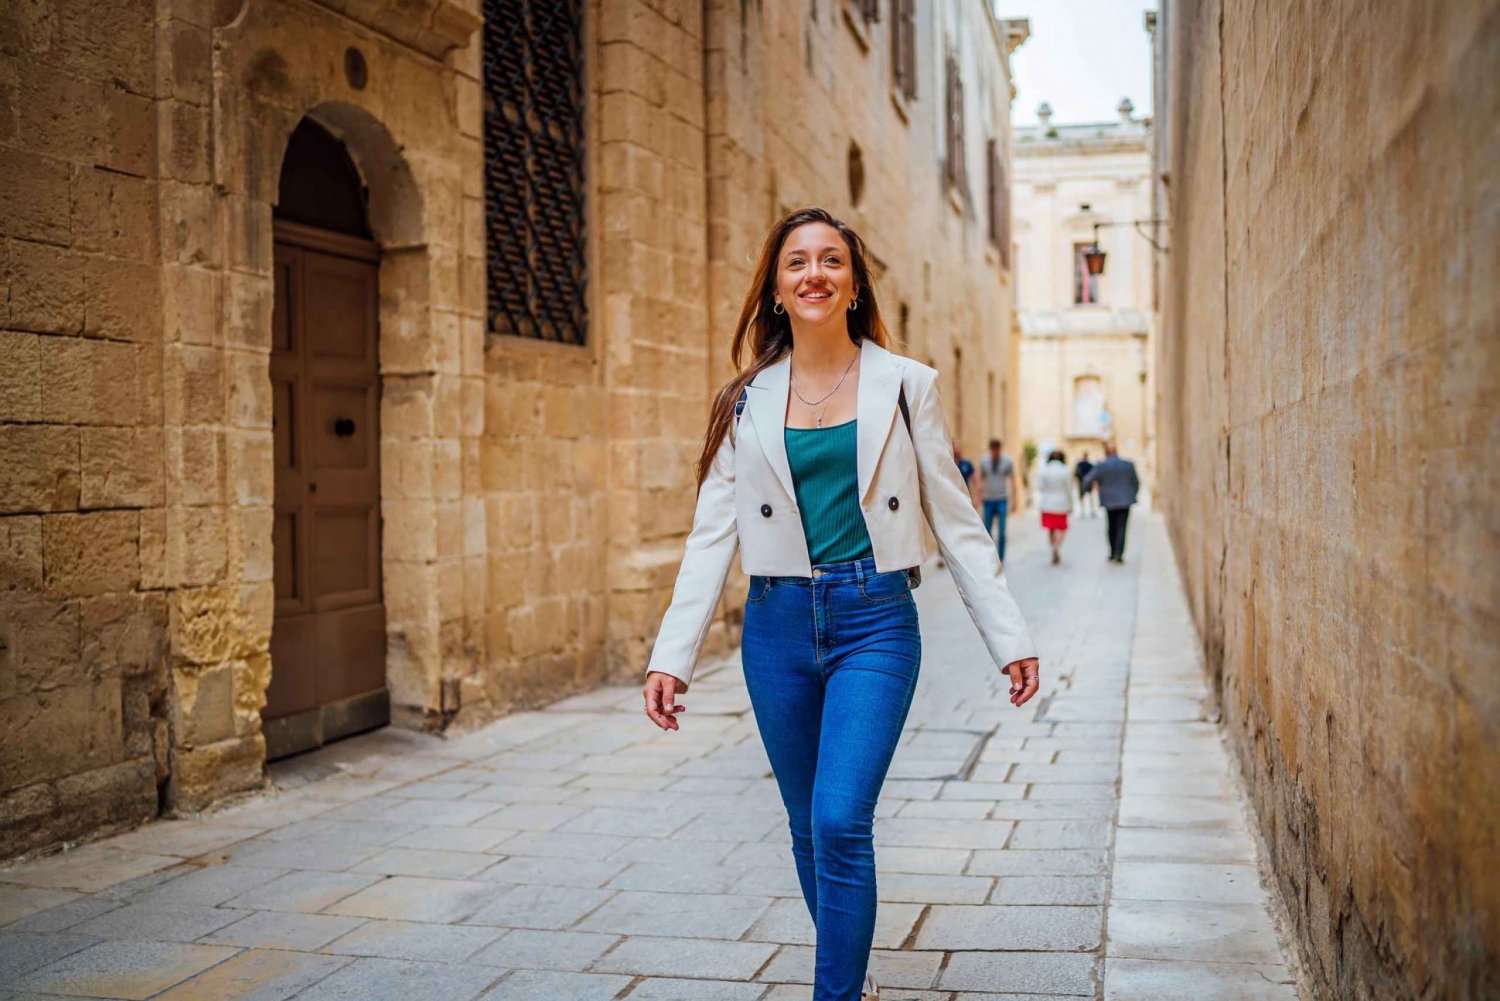 Vallettas historiska charm: En guidad vandringstur